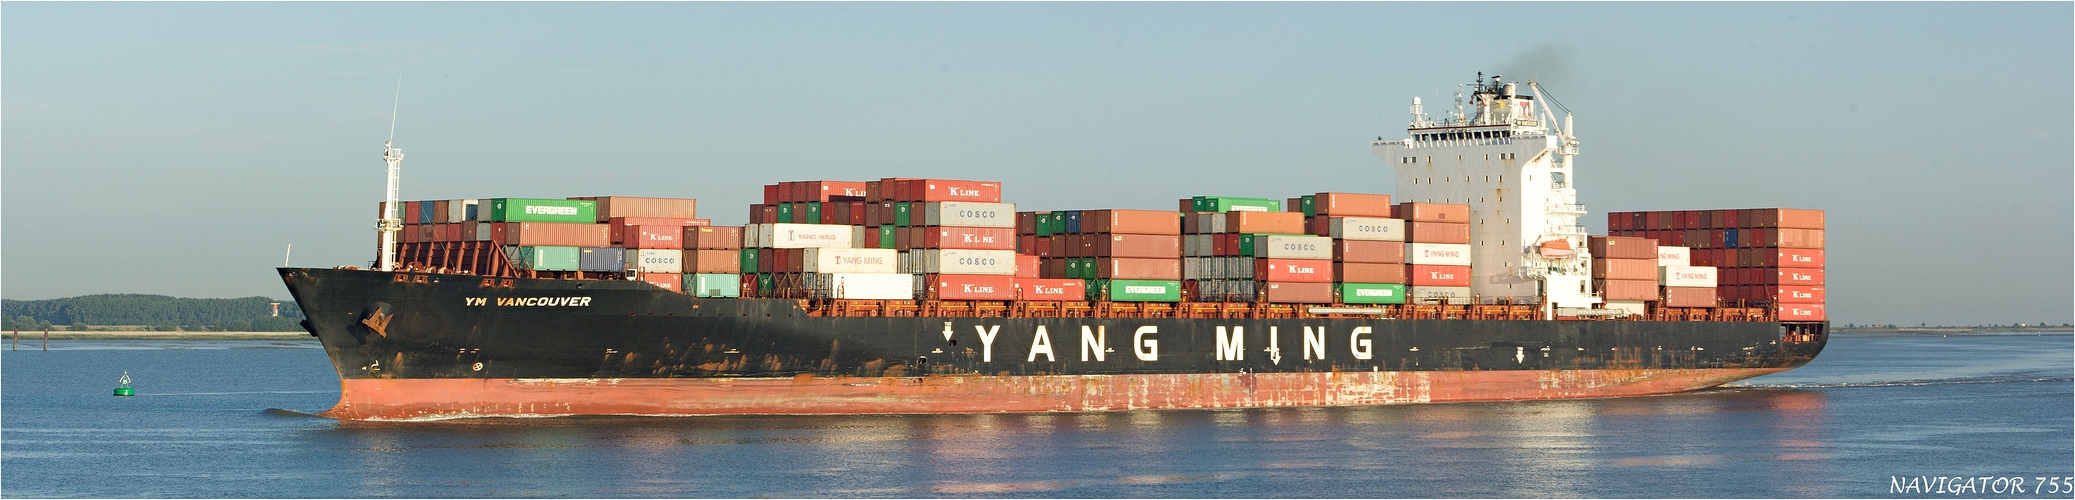 YM VANCOUVER (2) / Container Ship / Schelde / Antwerpen